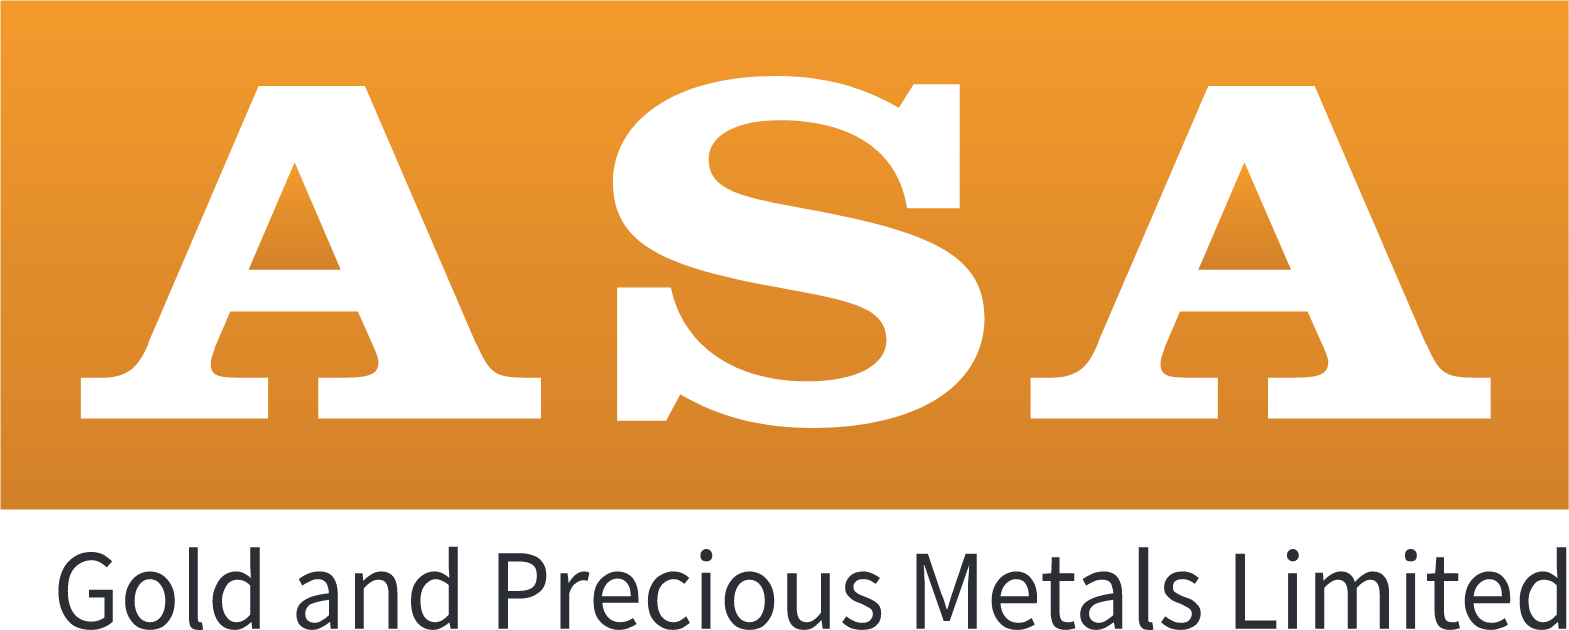 ASA Gold and Precious Metals logo large (transparent PNG)